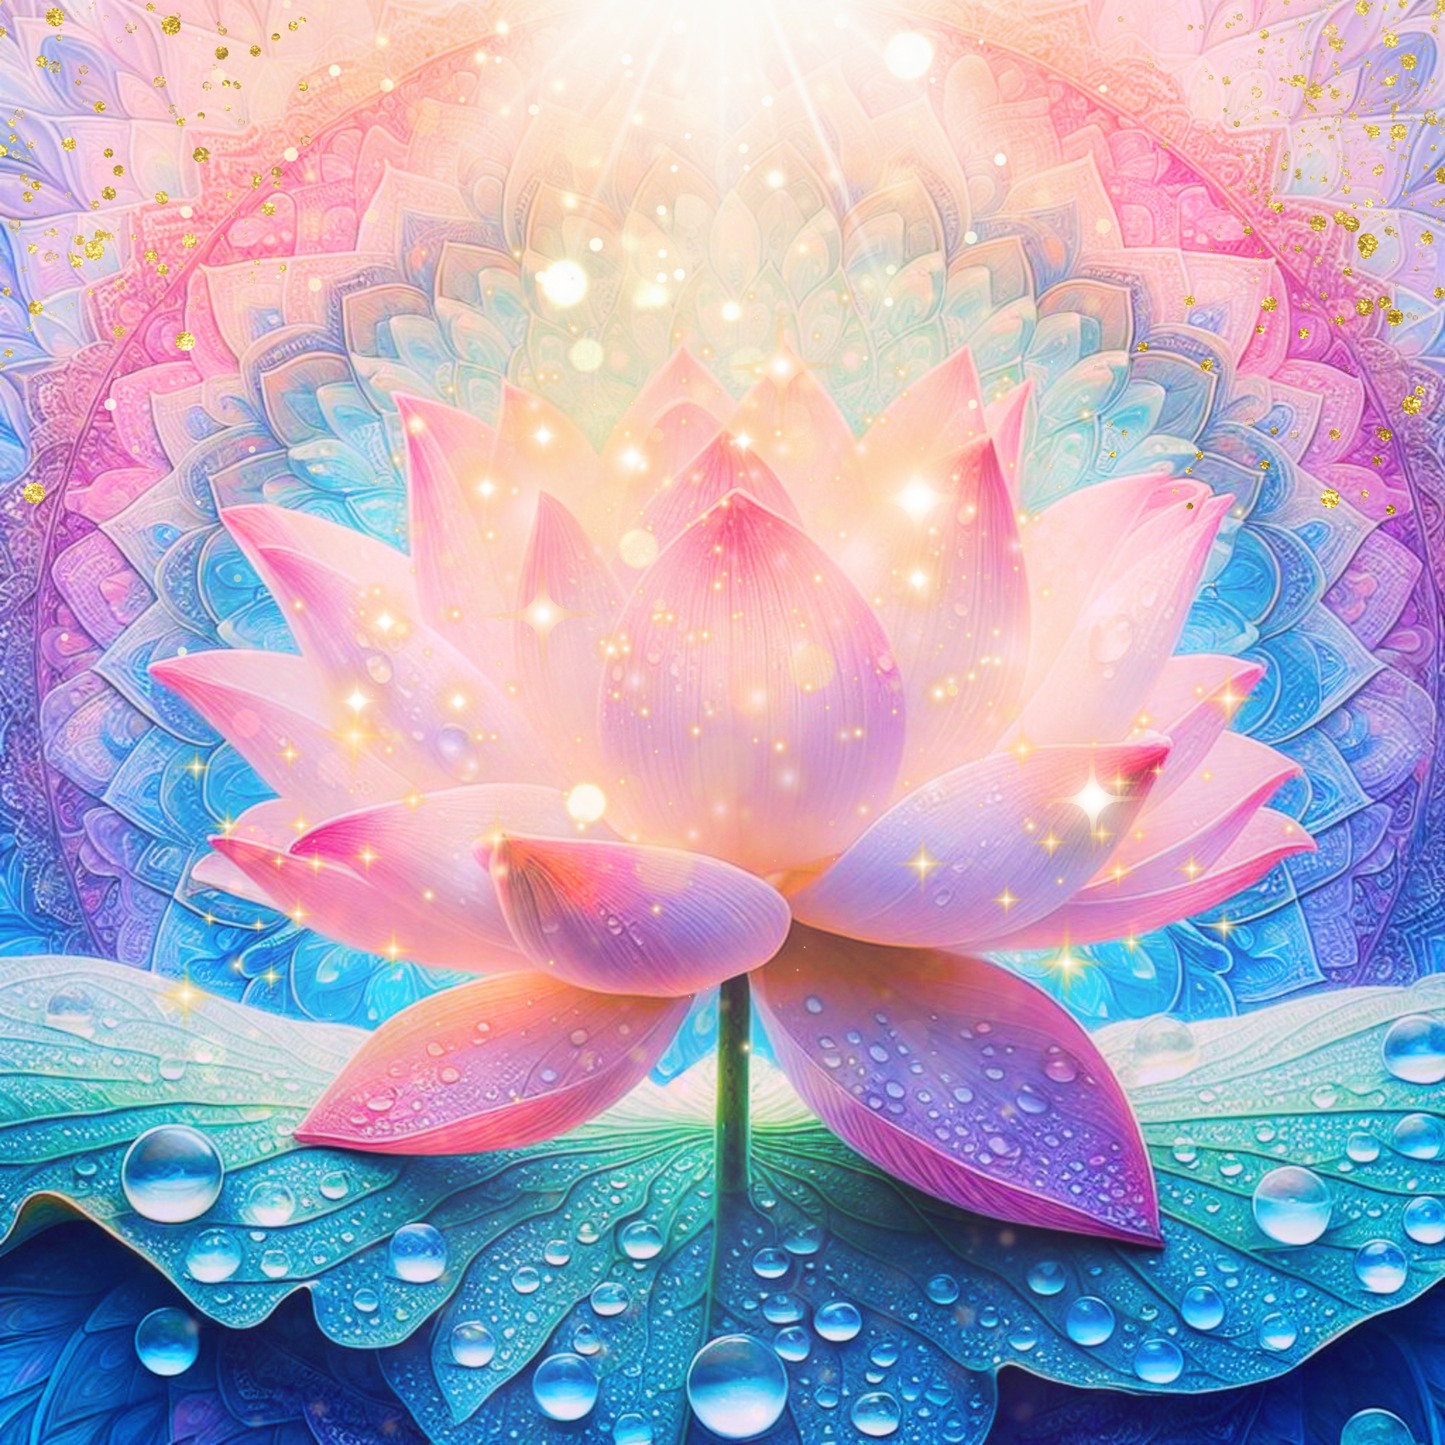 Ein mit Tautropfen bedeckter Lotus, vor einem pastellfarbenen Mandala, er glitzert in der Sonne.